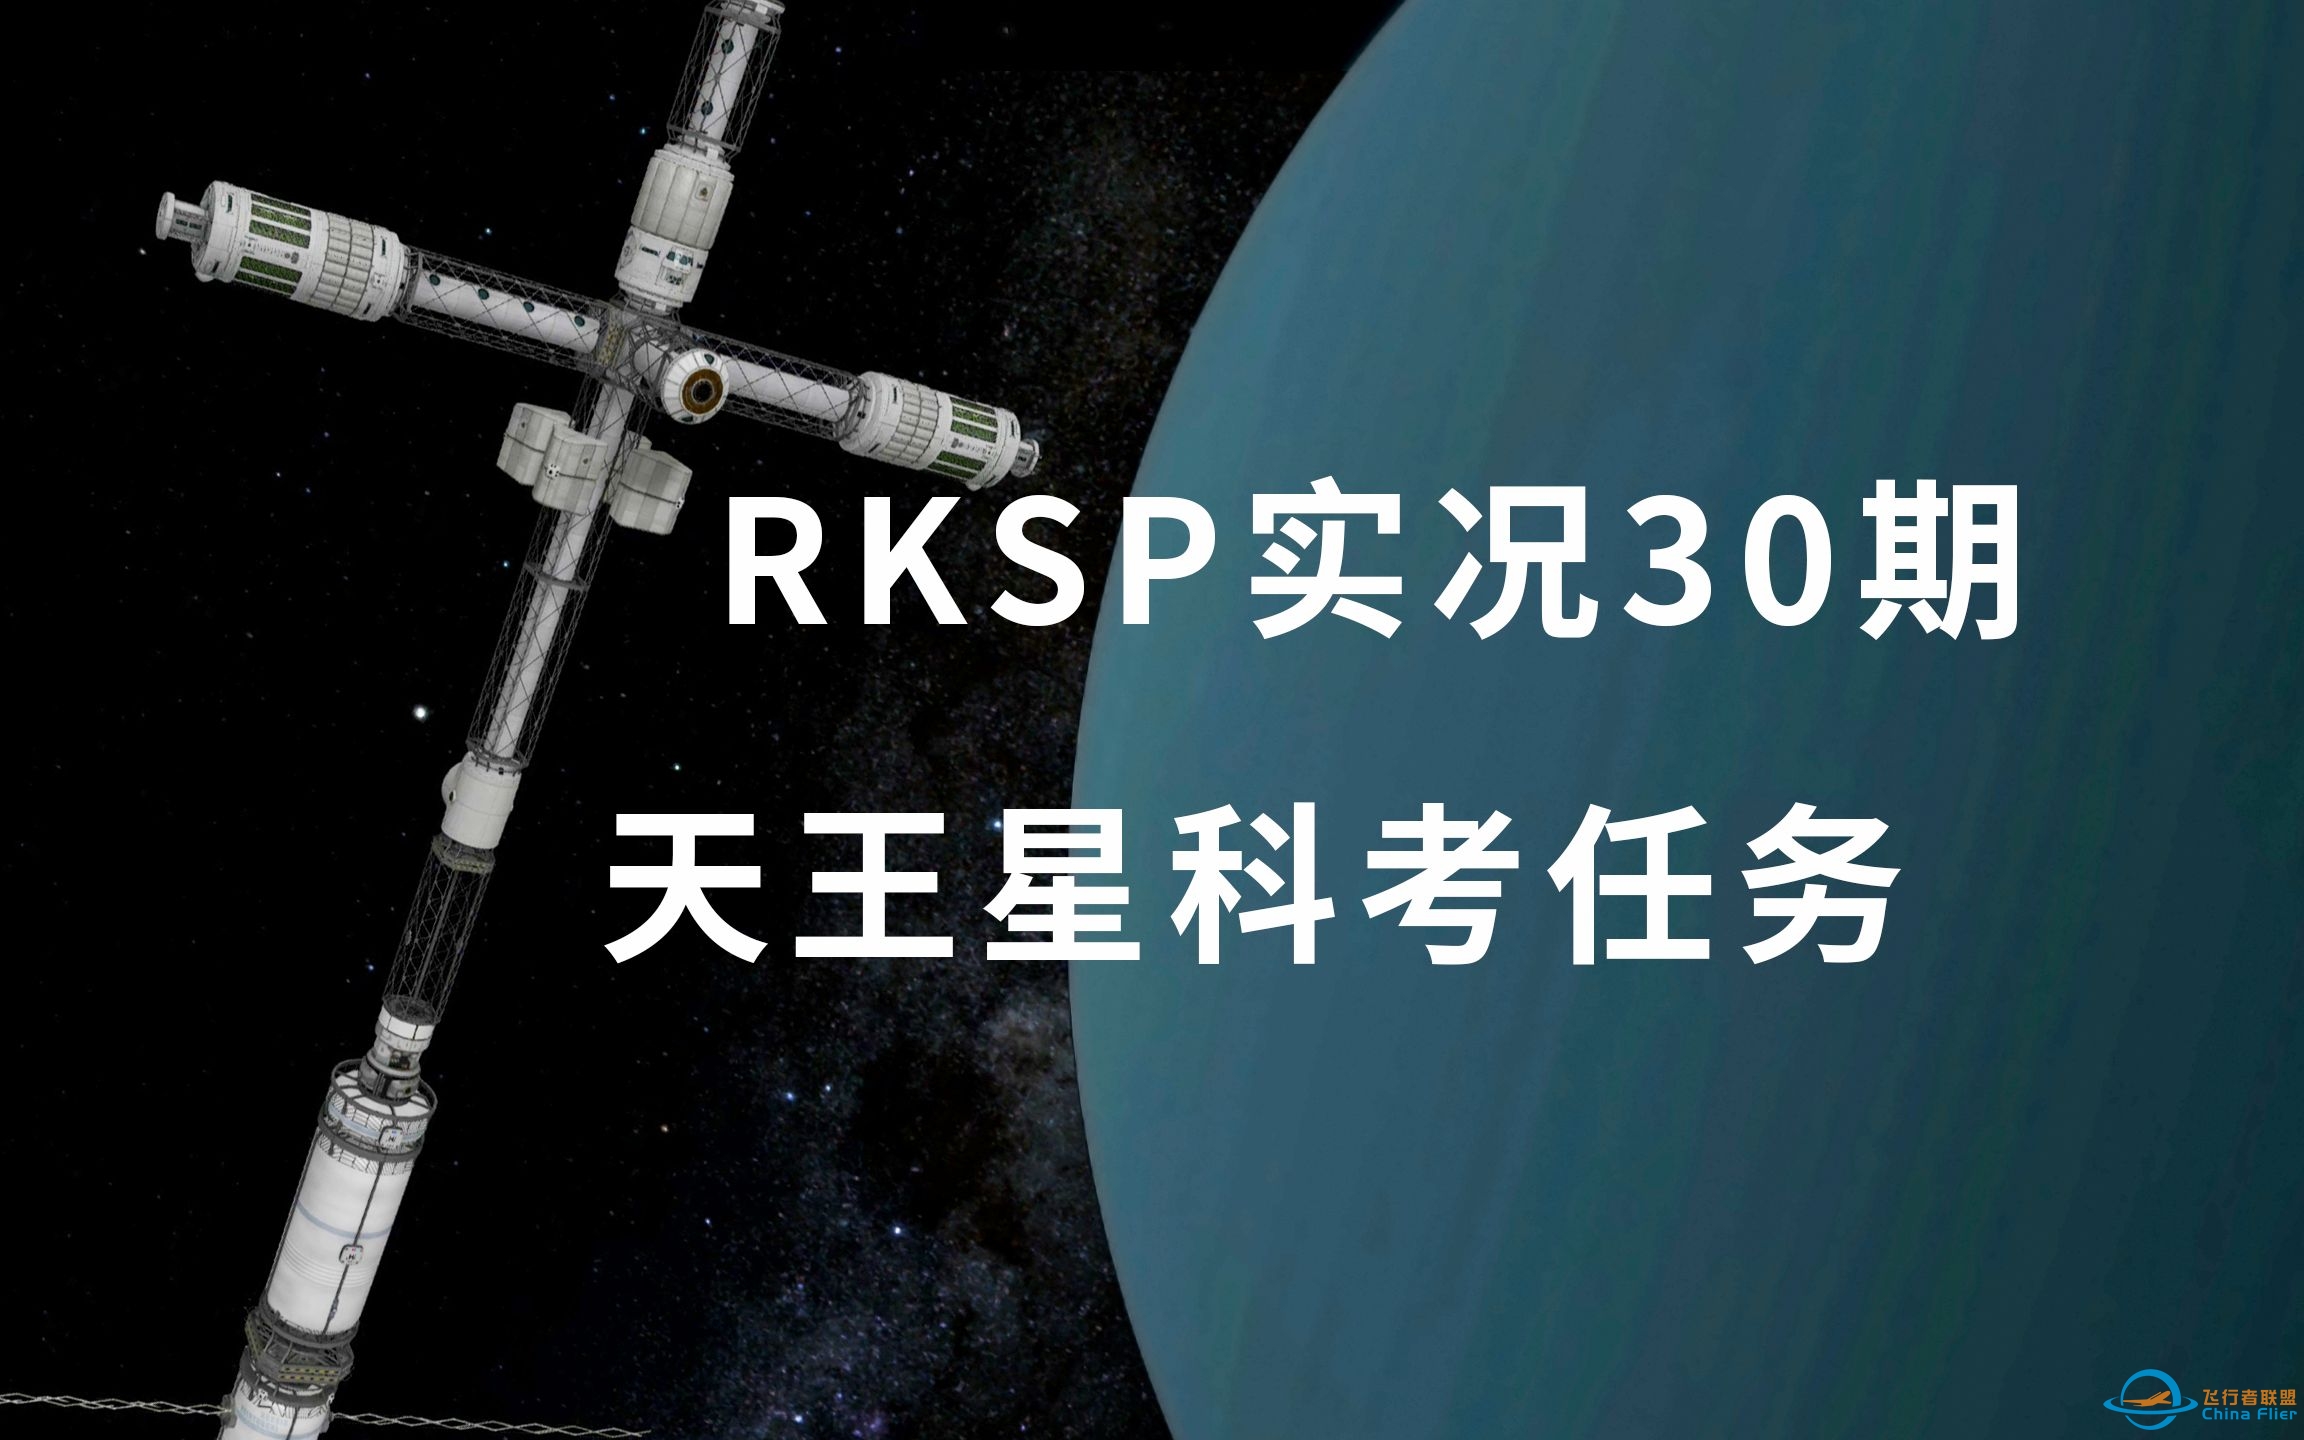 [4K画质|坎巴拉太空计划] 寒冰与烈火，载人深入天王星大气（RKSP实况30期）-1707 